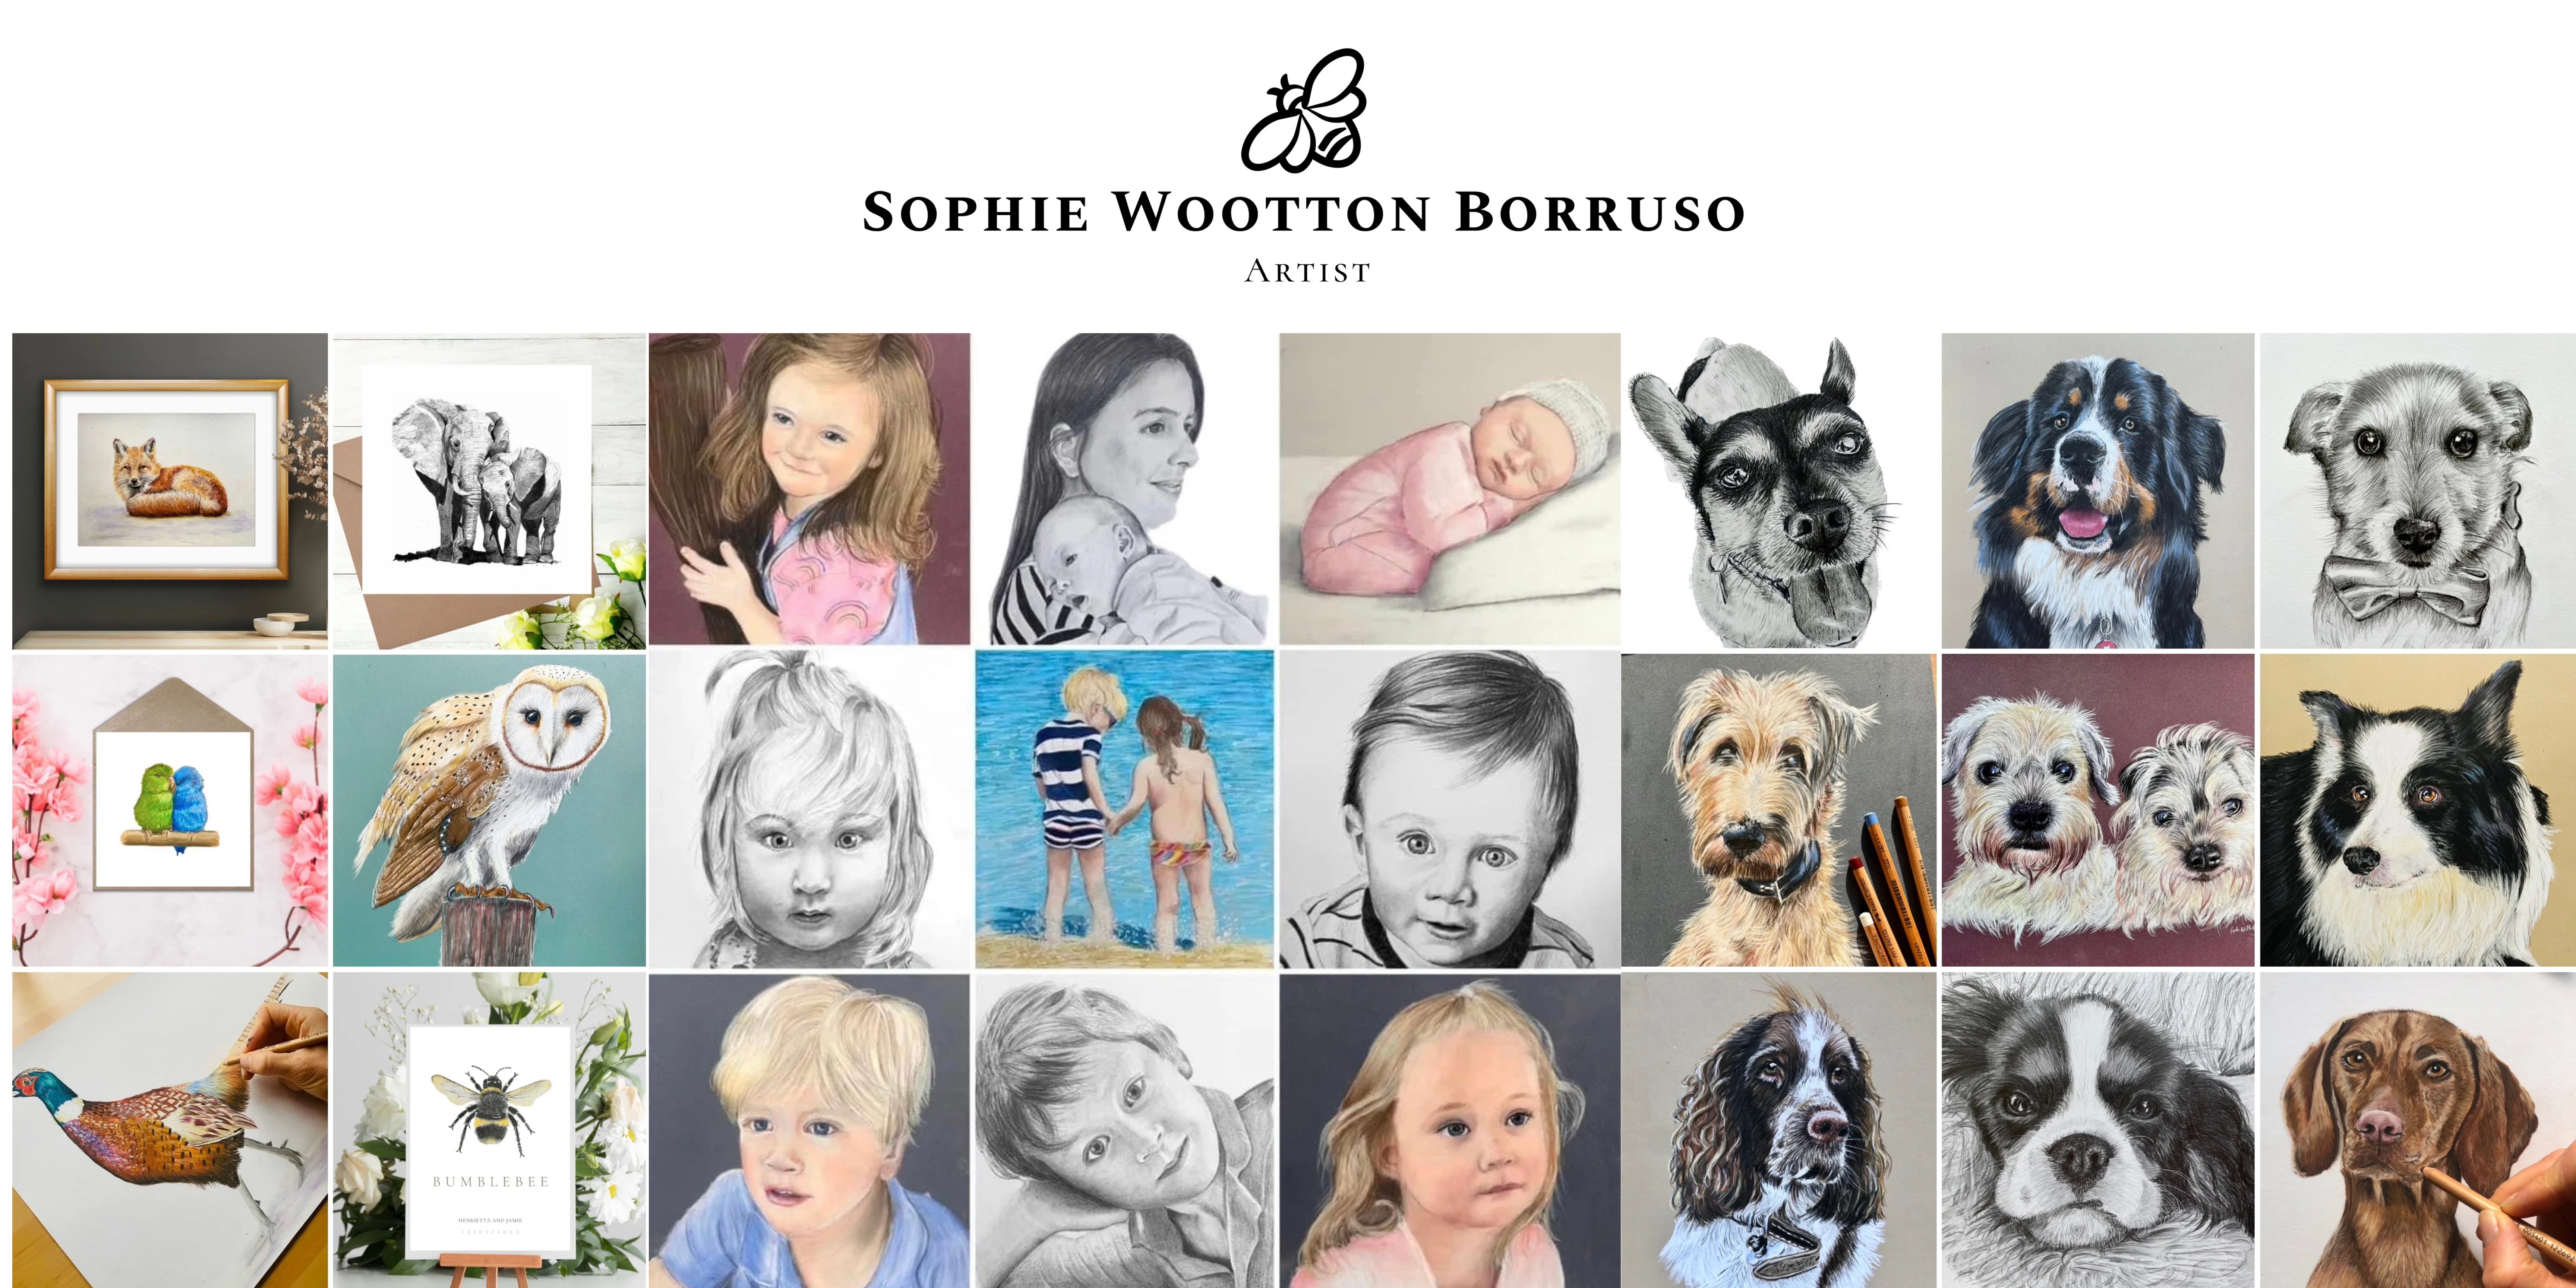 SOPHIE WOOTTON BORRUSO ARTIST